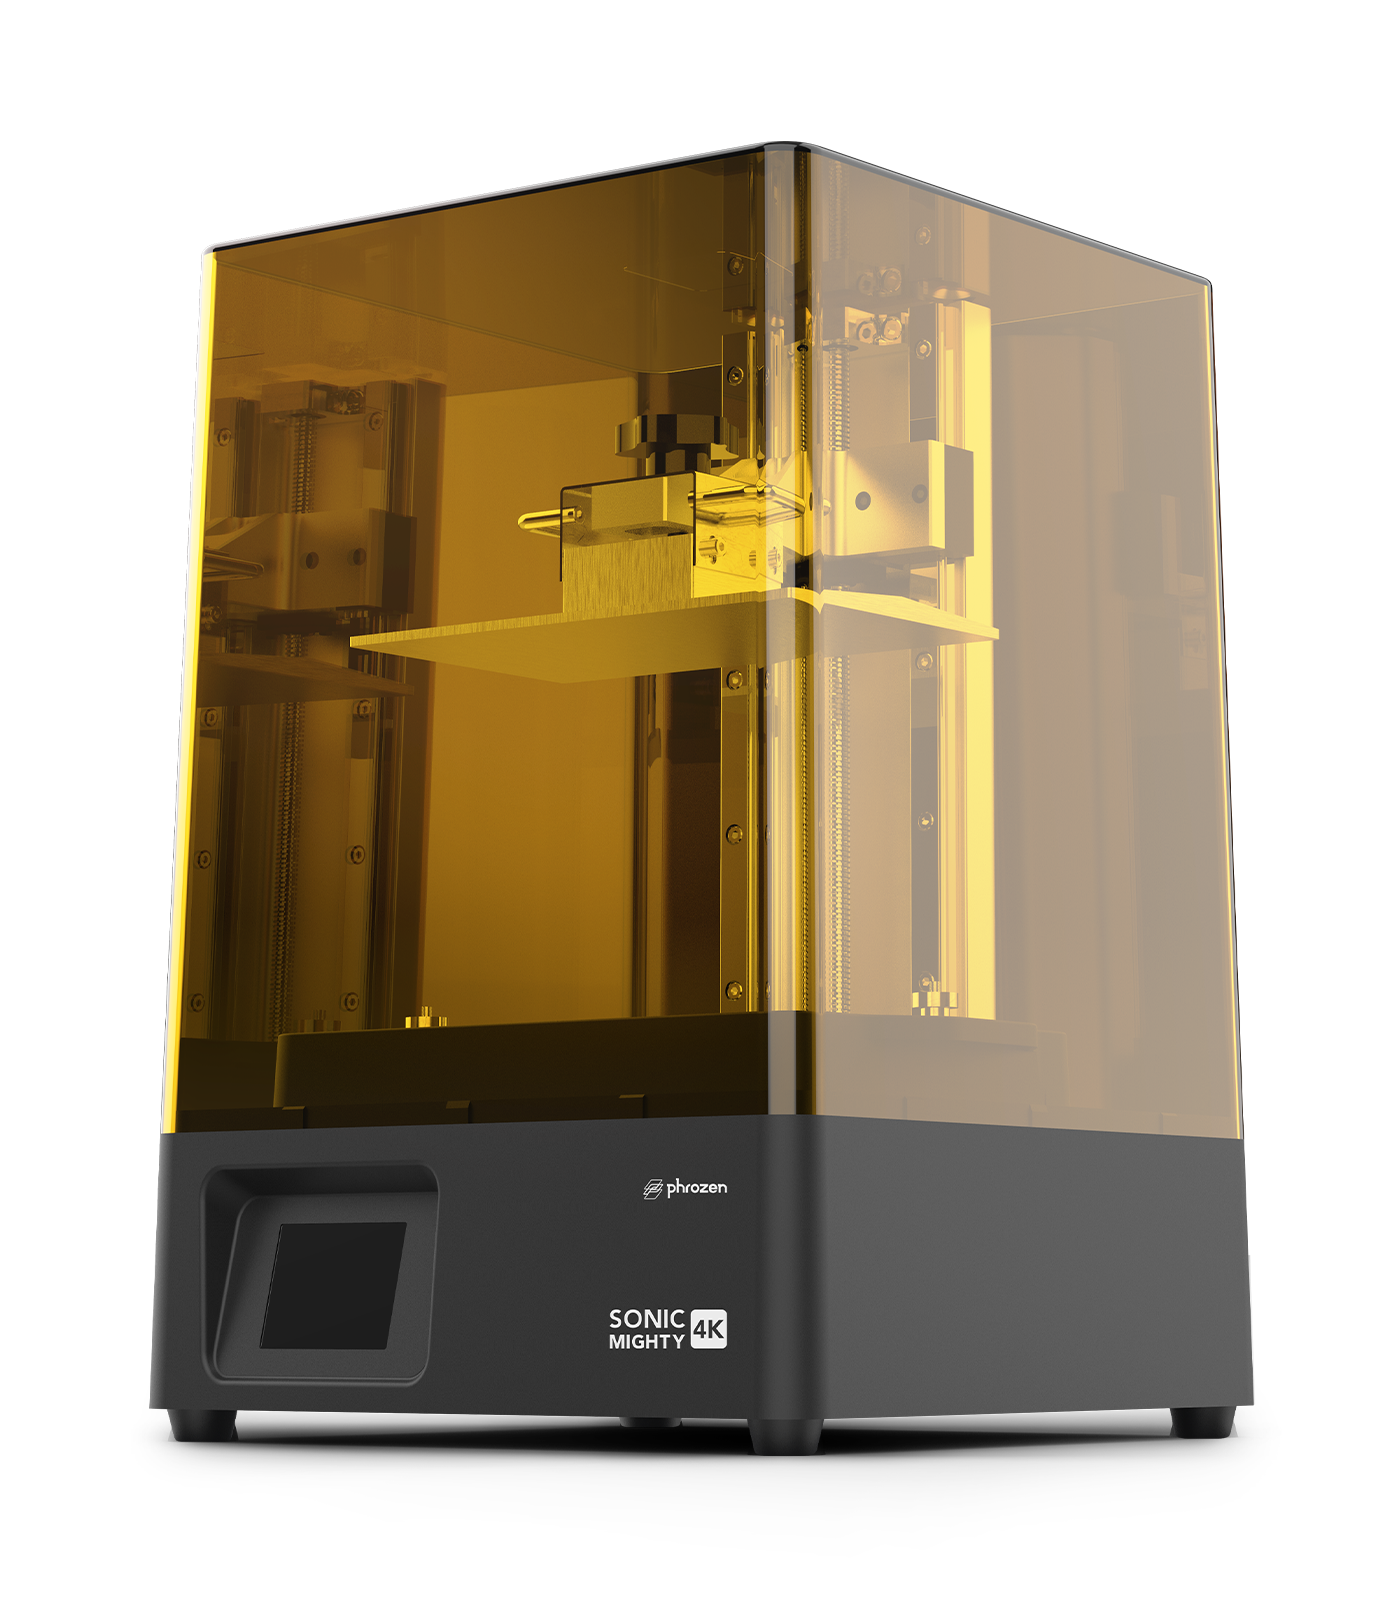 Phrozen LCD Frame Tape  Phrozen Technology: Resin 3D Printer Manufacturer